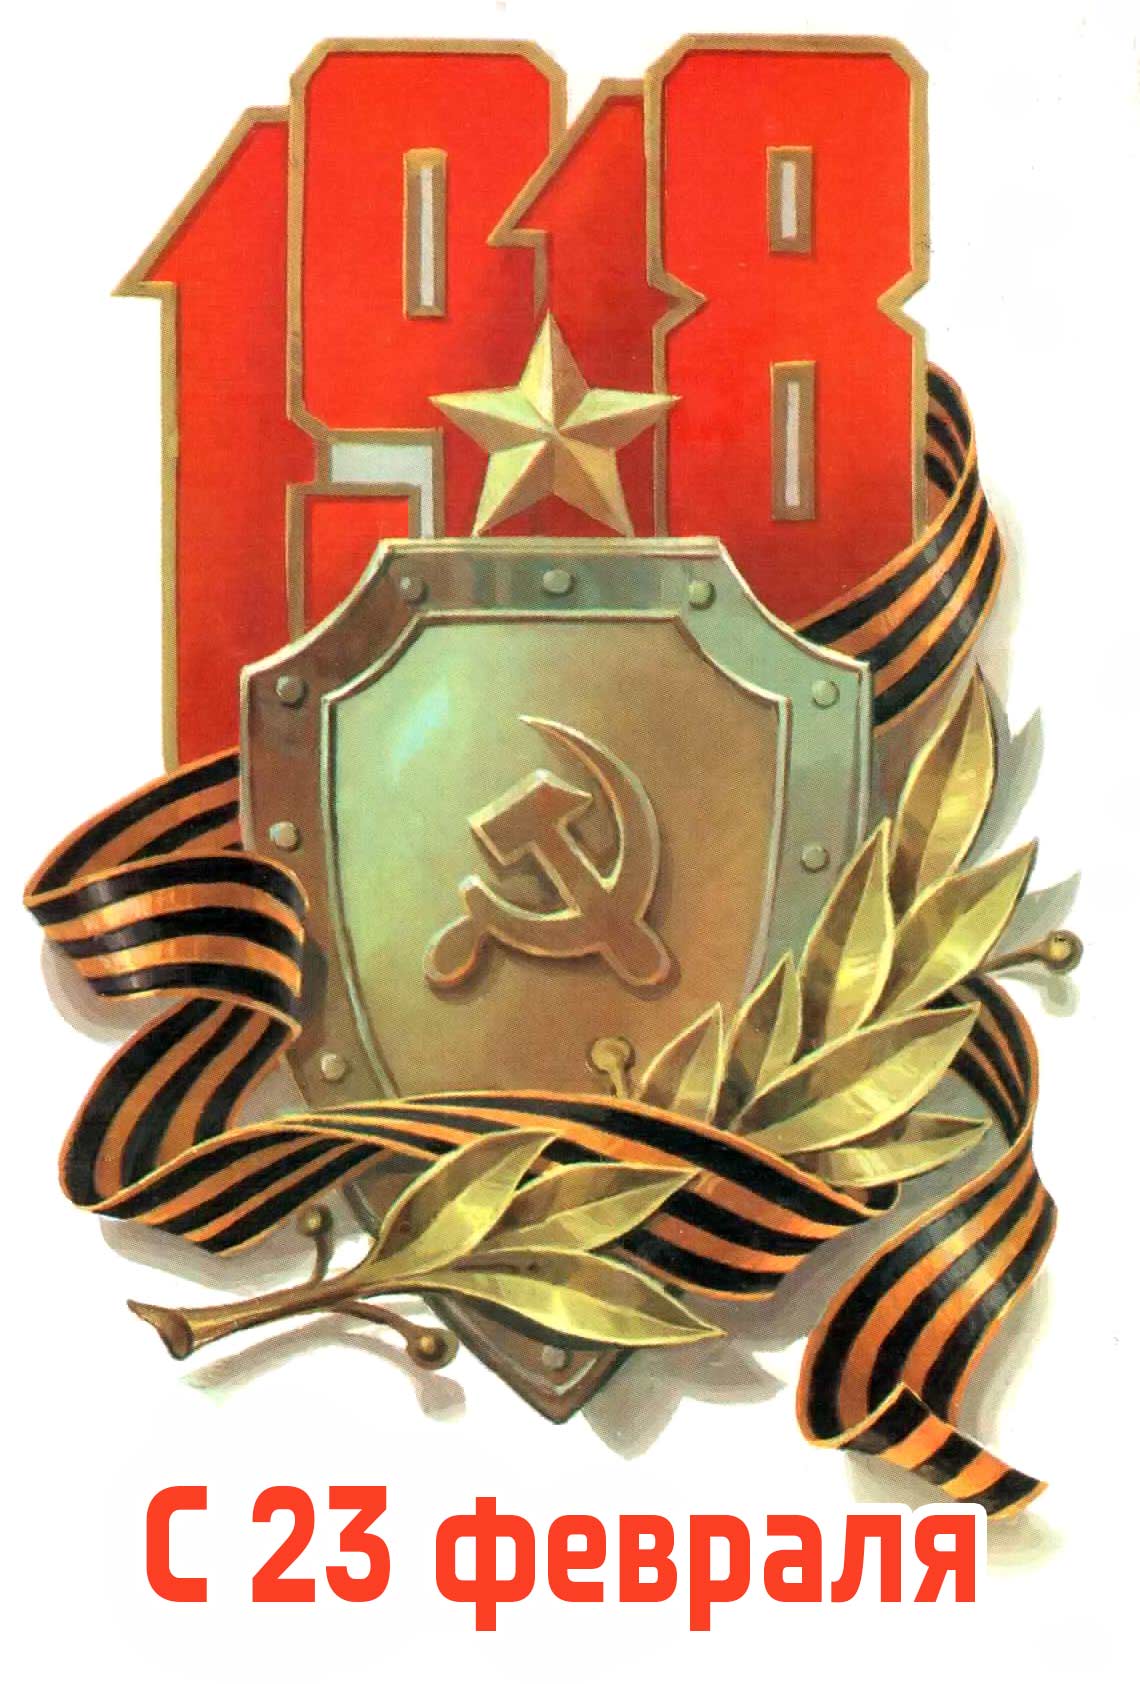 Слава Вооруженным Силам России!